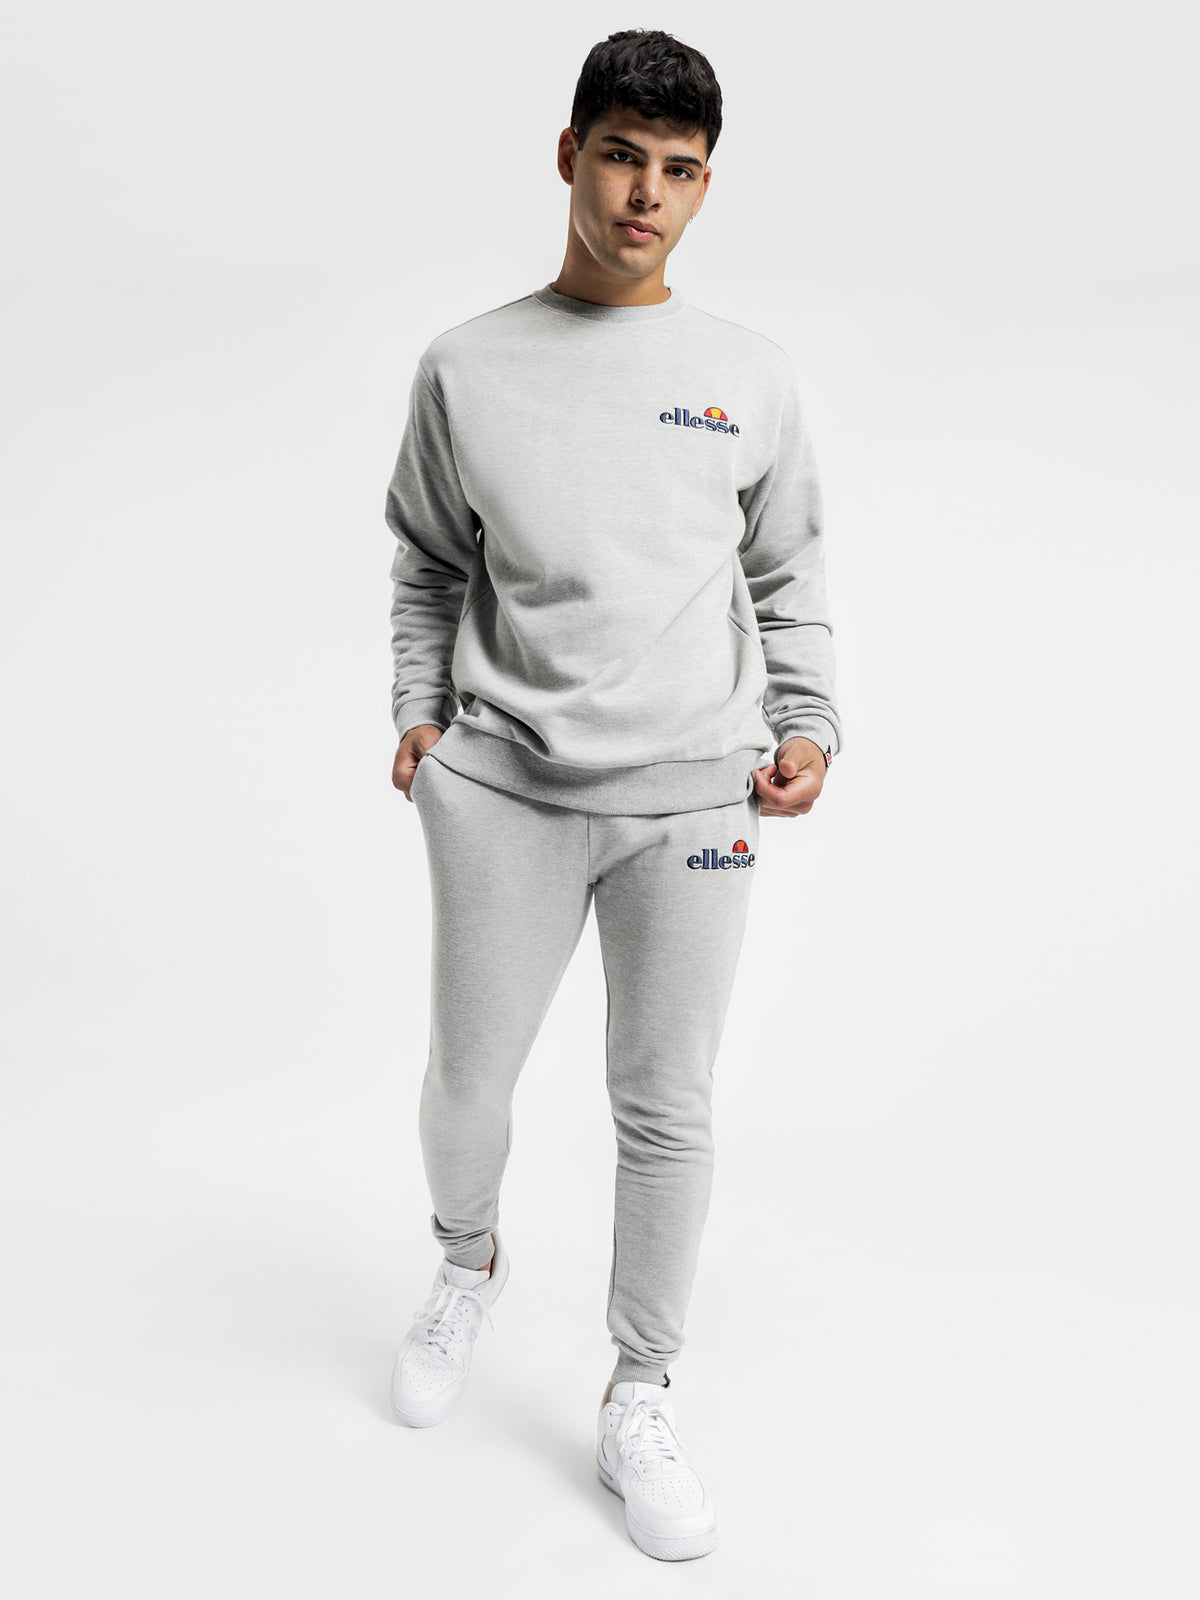 Fierro Sweatshirt in Grey